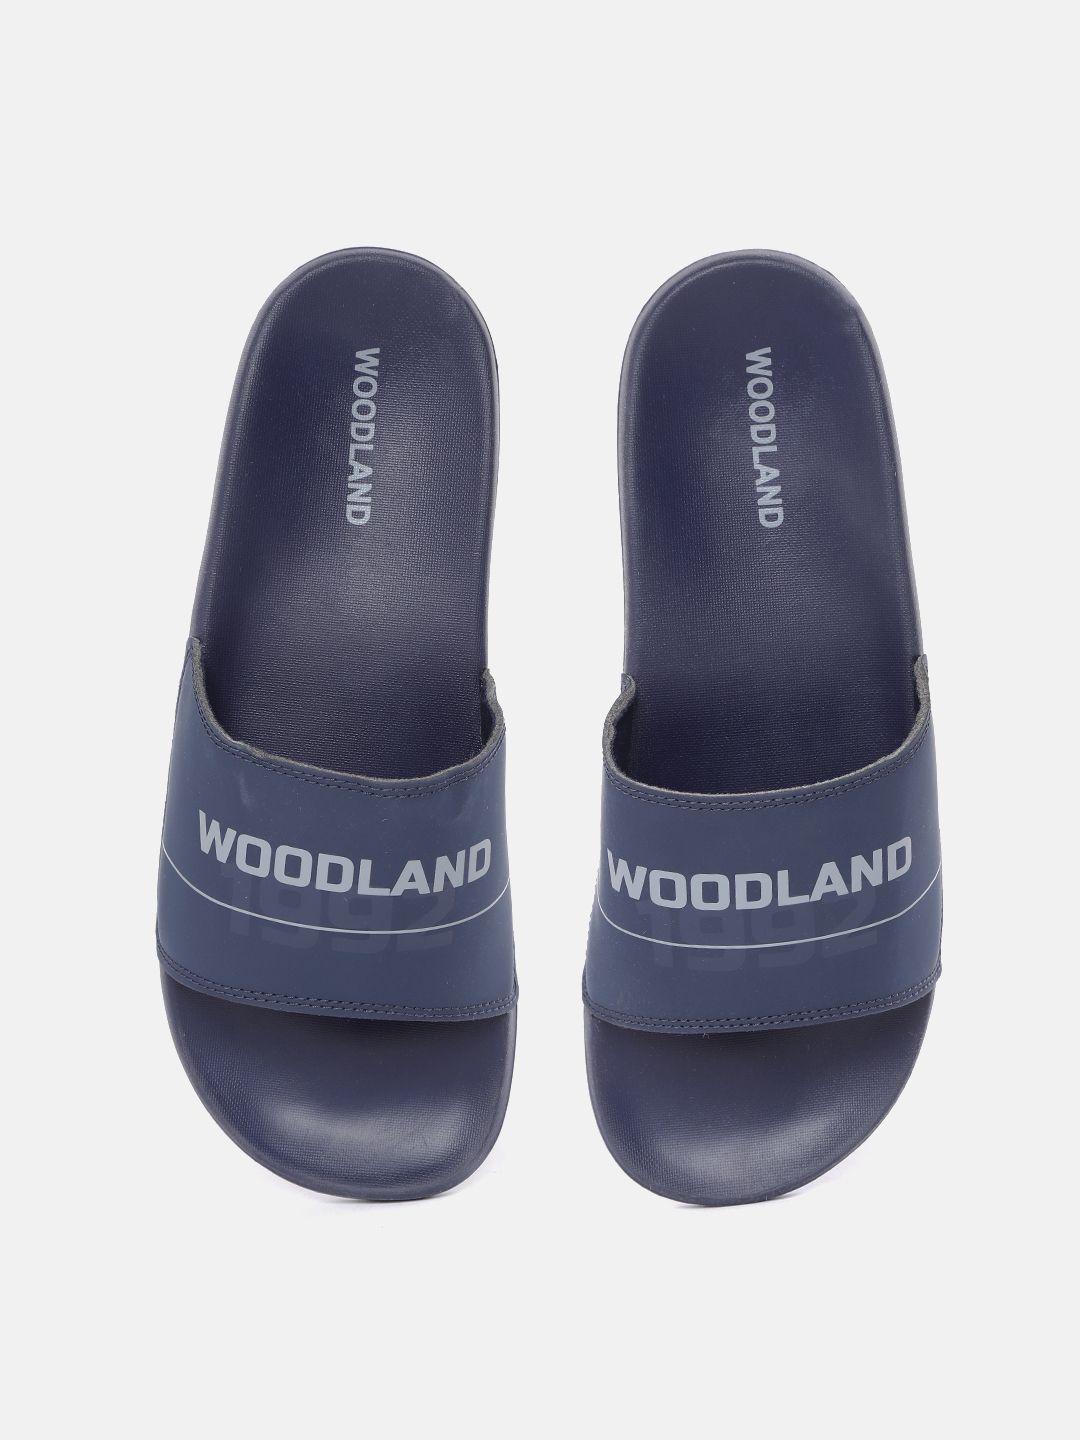 woodland-men-navy-blue-&-grey-printed-sliders